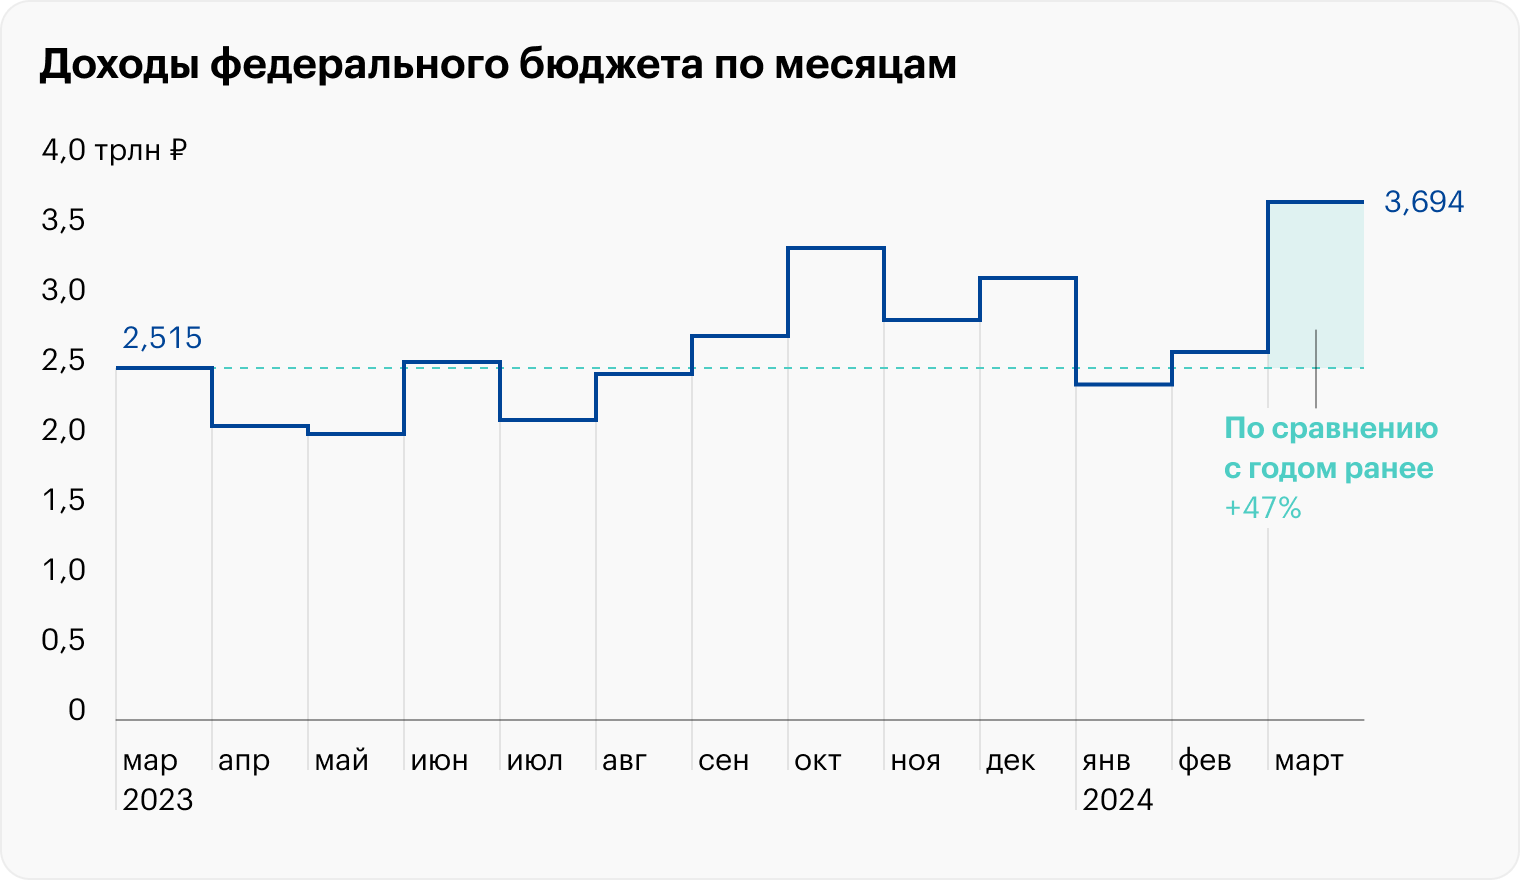 Российский бюджет в марте получил рекордные доходы — 3,7 трлн рублей